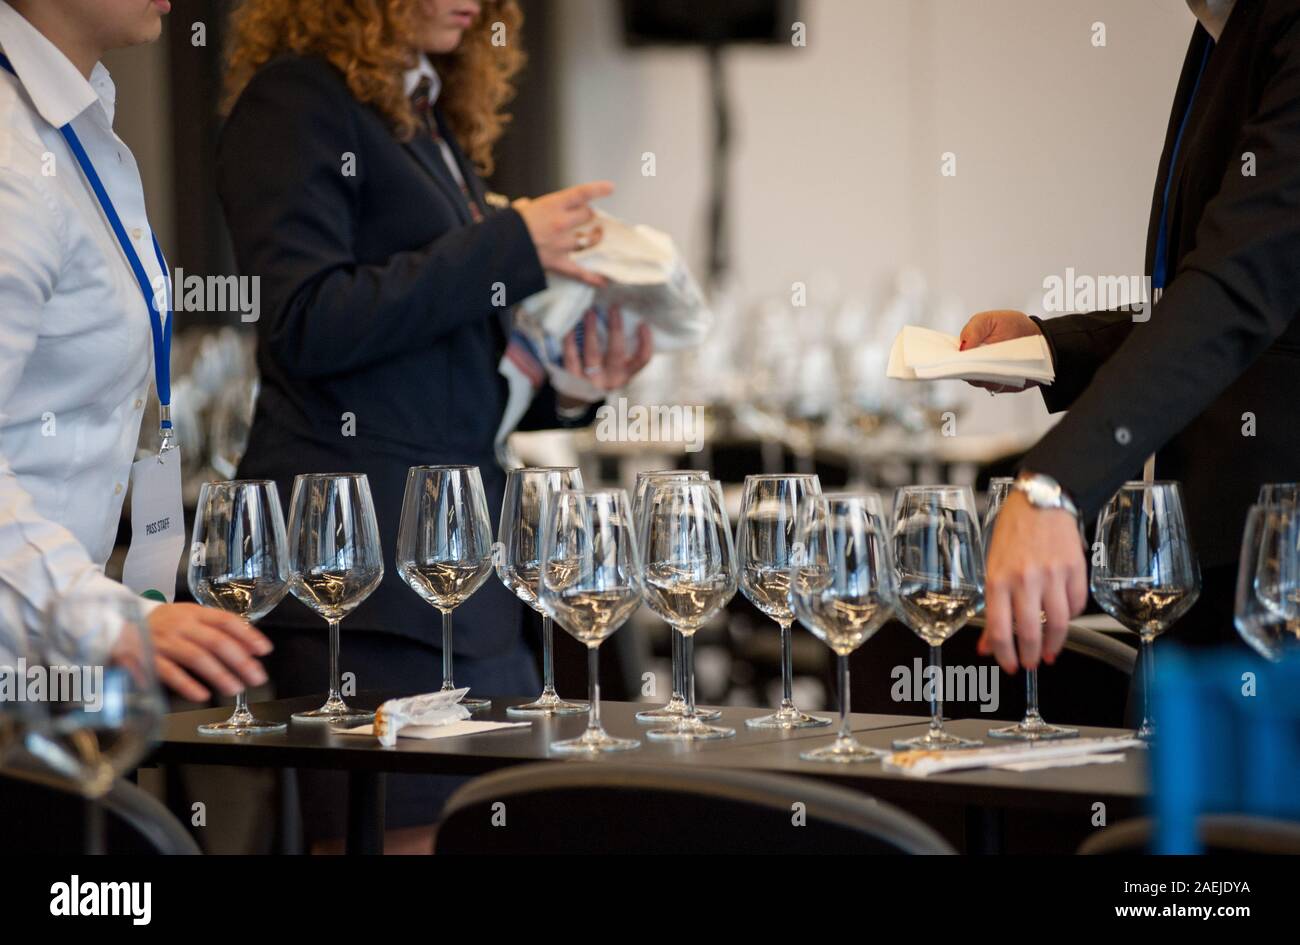 Kellnerin stellen Sie die Tabellen mit Crystal gobles Für eine Weinprobe Werkstatt. Catering Service und Personal bei der Arbeit. Stockfoto